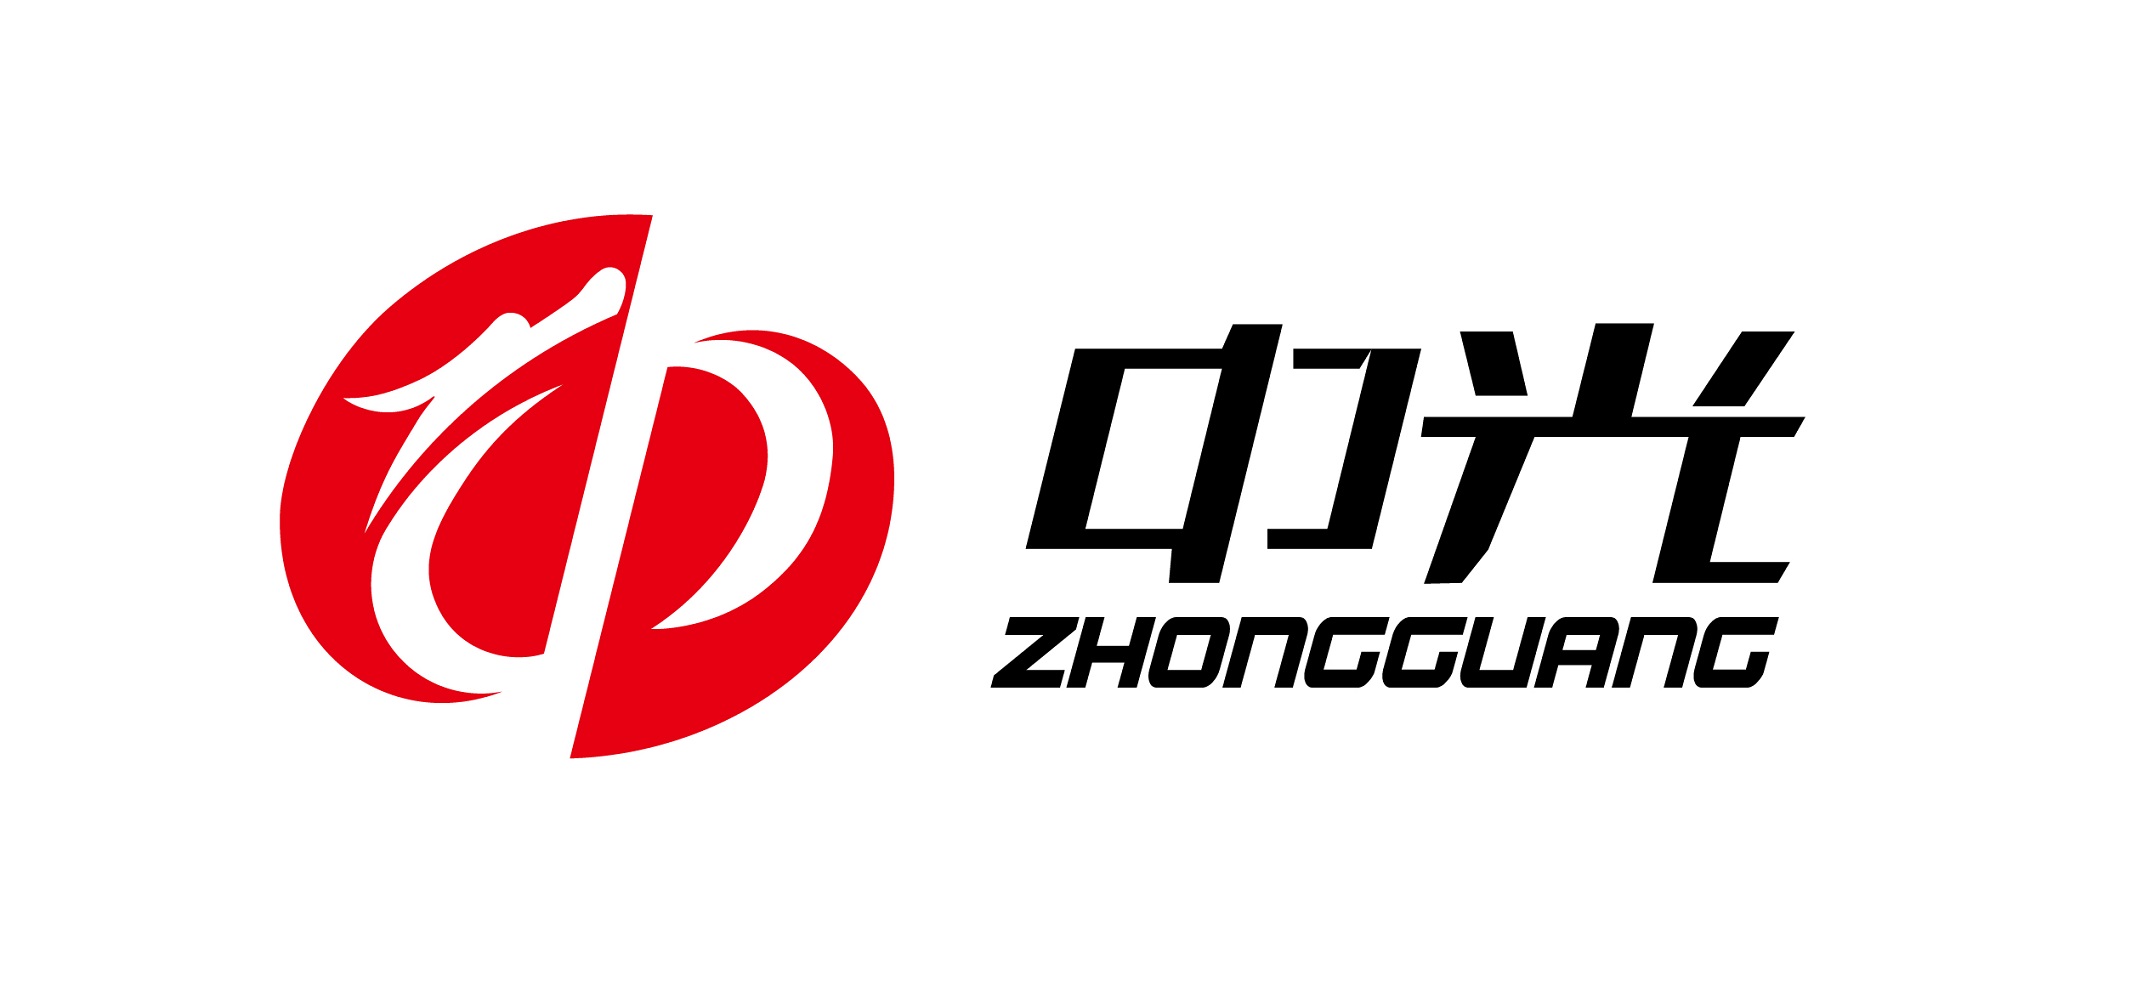 Chengdu Zhongguang Disinfectant Co.,Ltd